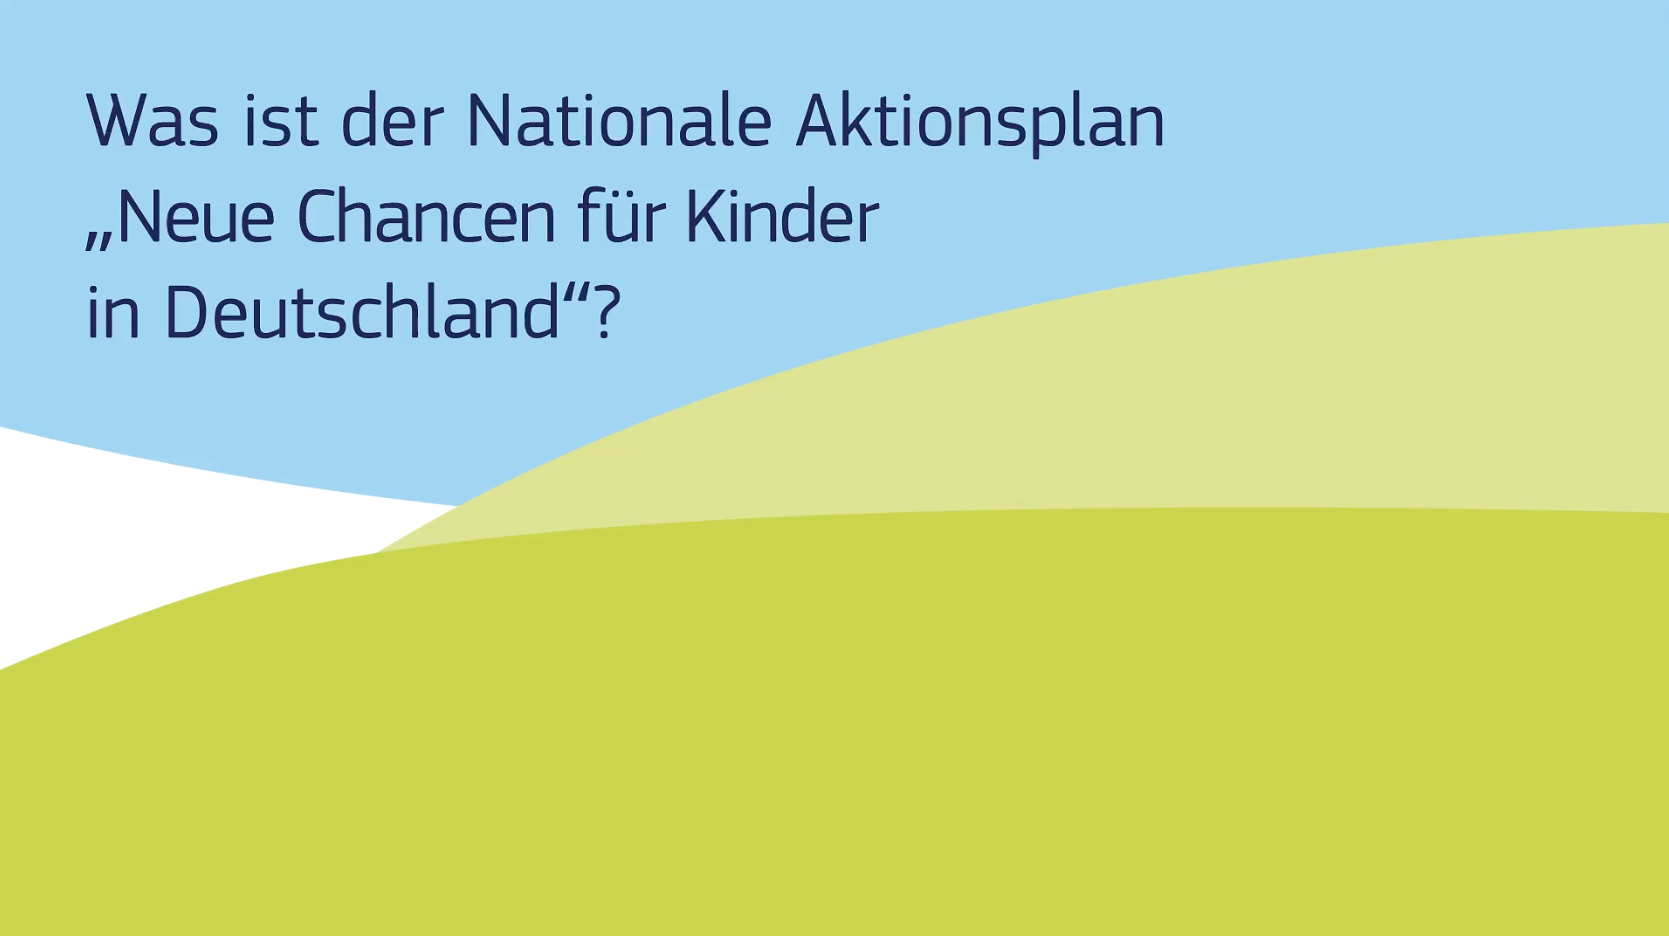 Der Nationale Aktionsplan "Neue Chancen für Kinder in Deutschland"